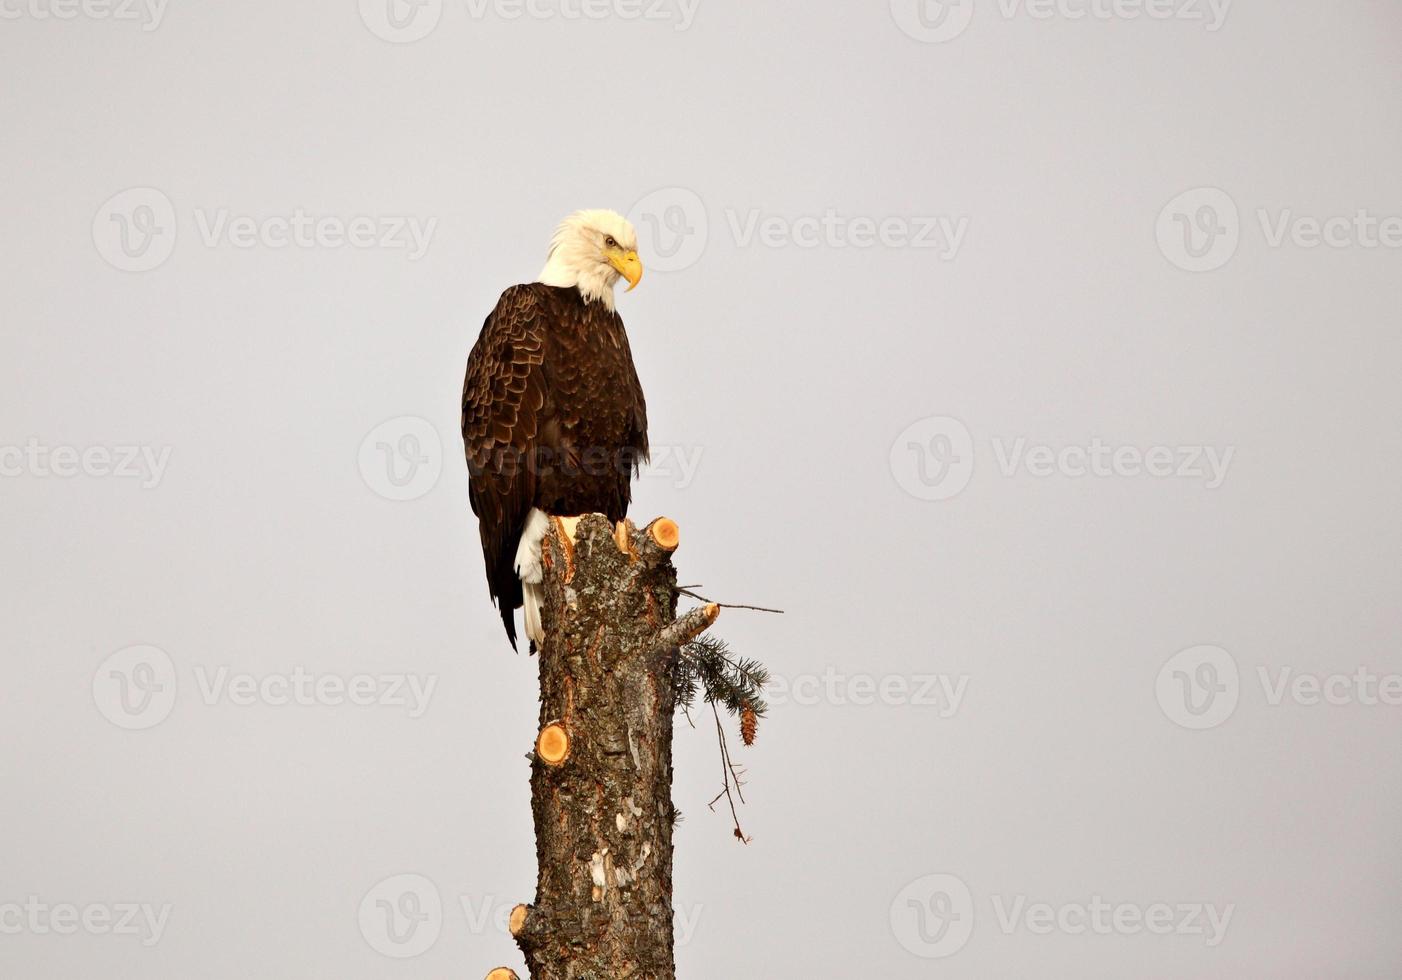 águila calva encaramado en el árbol foto